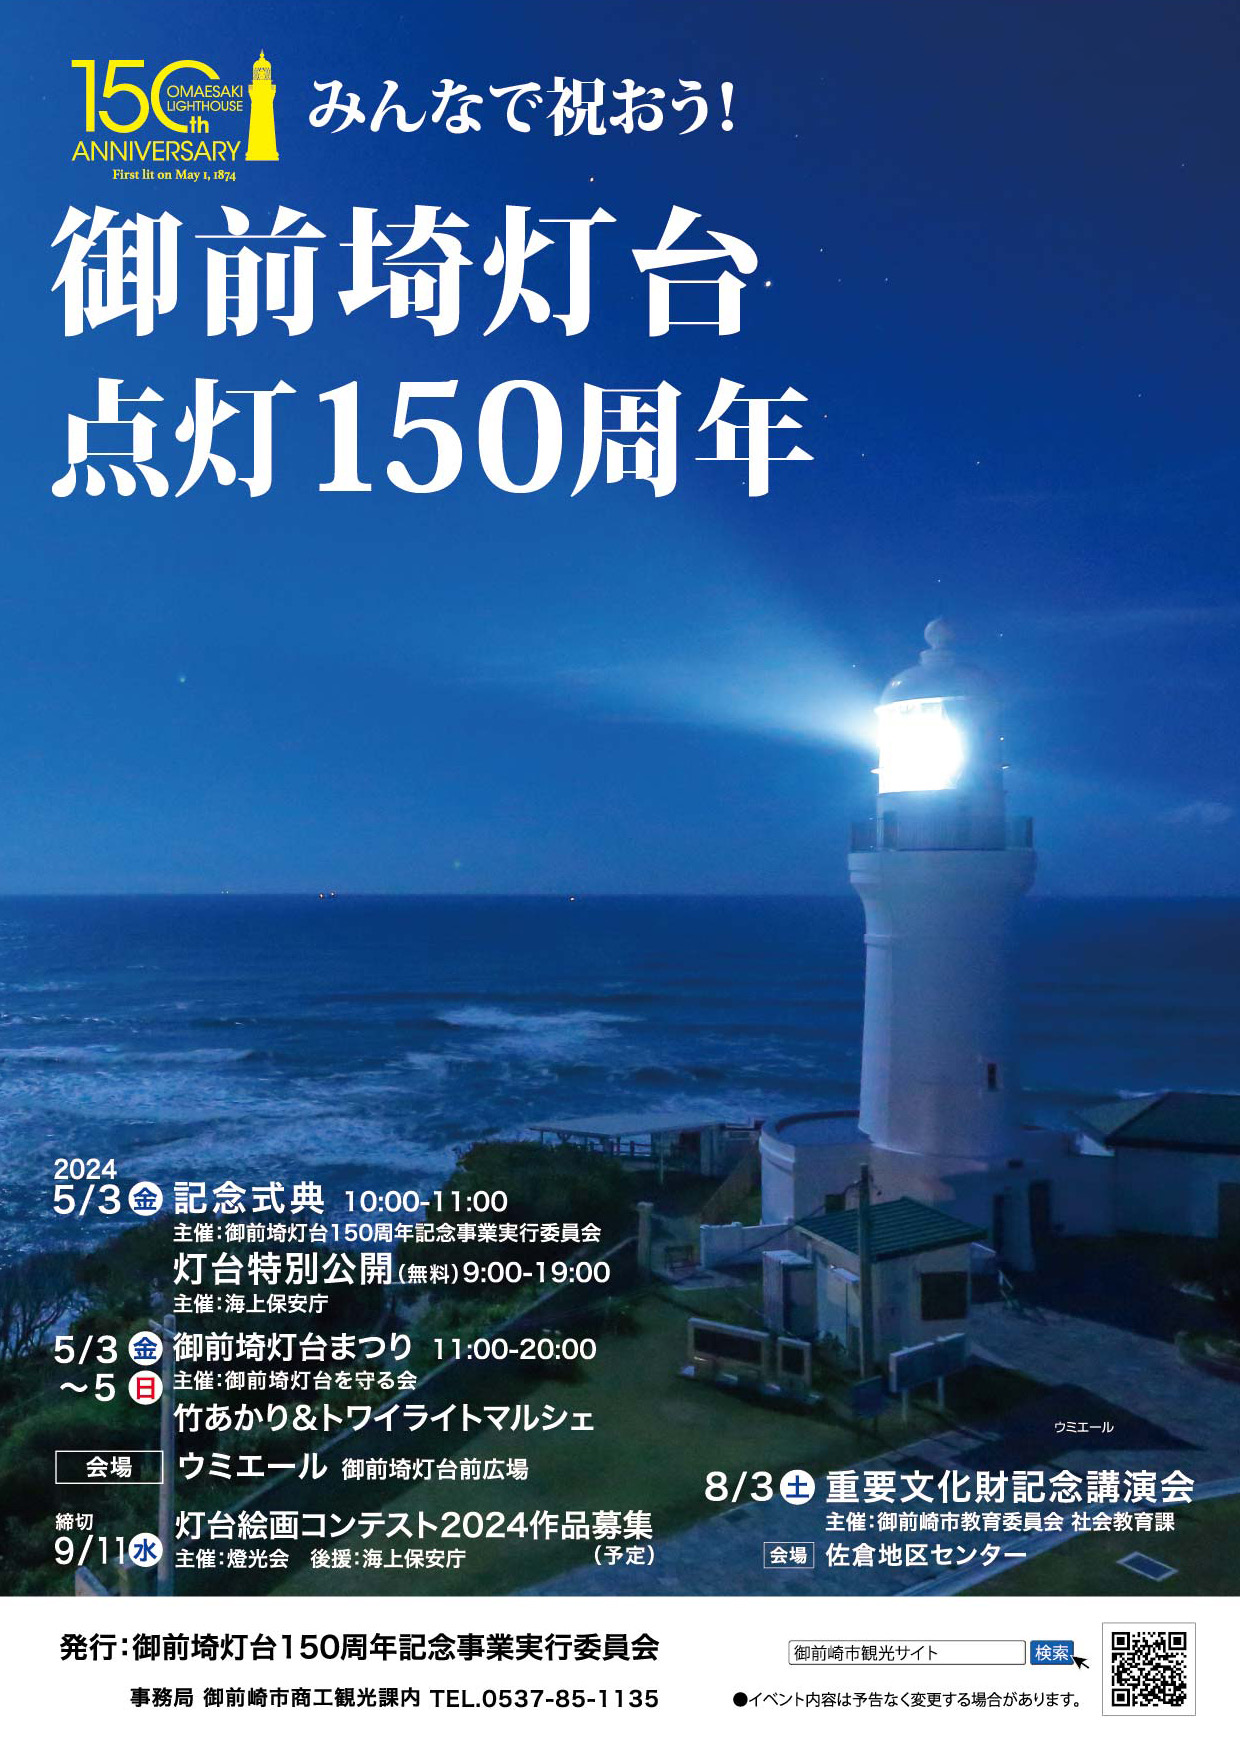 絶版品】日本の灯台シリーズ 御前崎灯台 150/1 ザッカピーエーピー - 鉄道模型